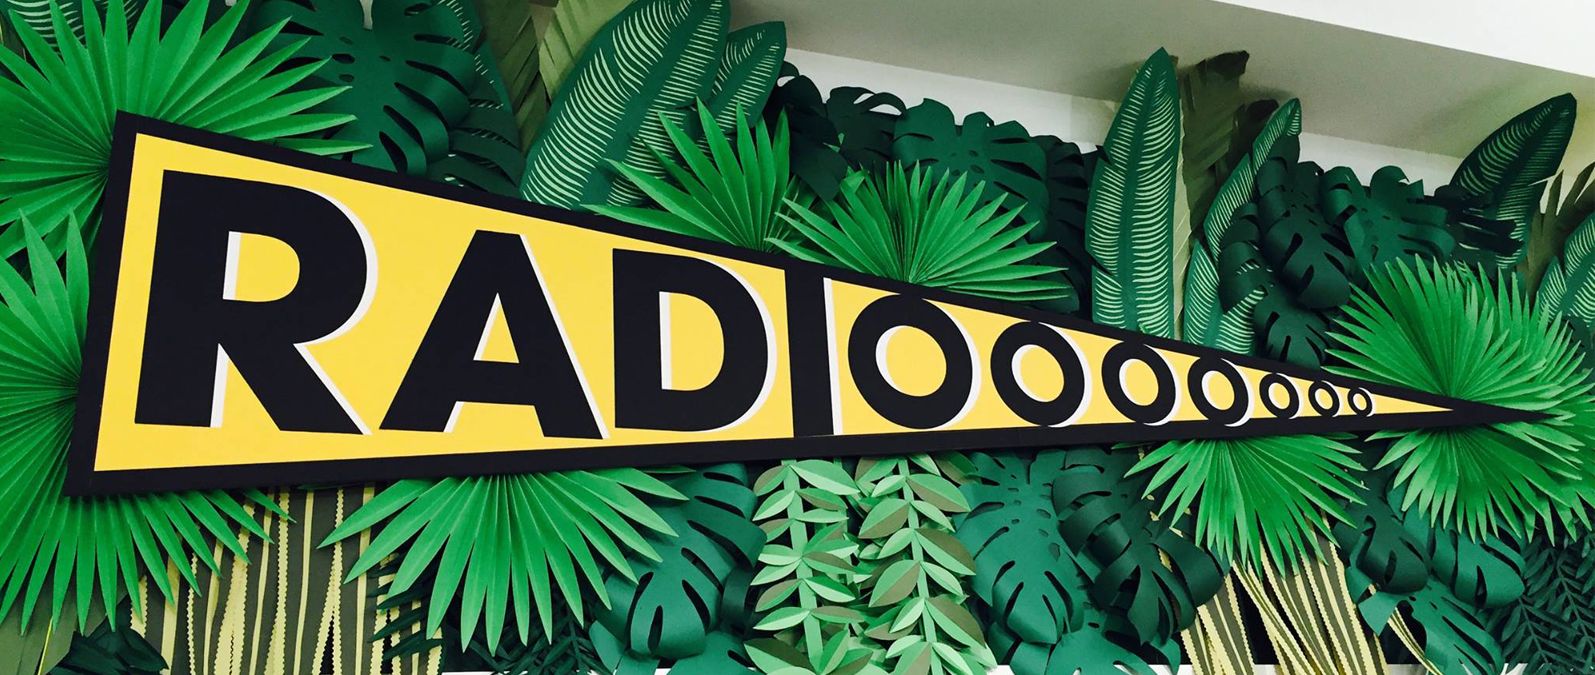 Radiooooo, une machine à remonter le temps et à arpenter le monde en  musique – Master Géographies Numériques